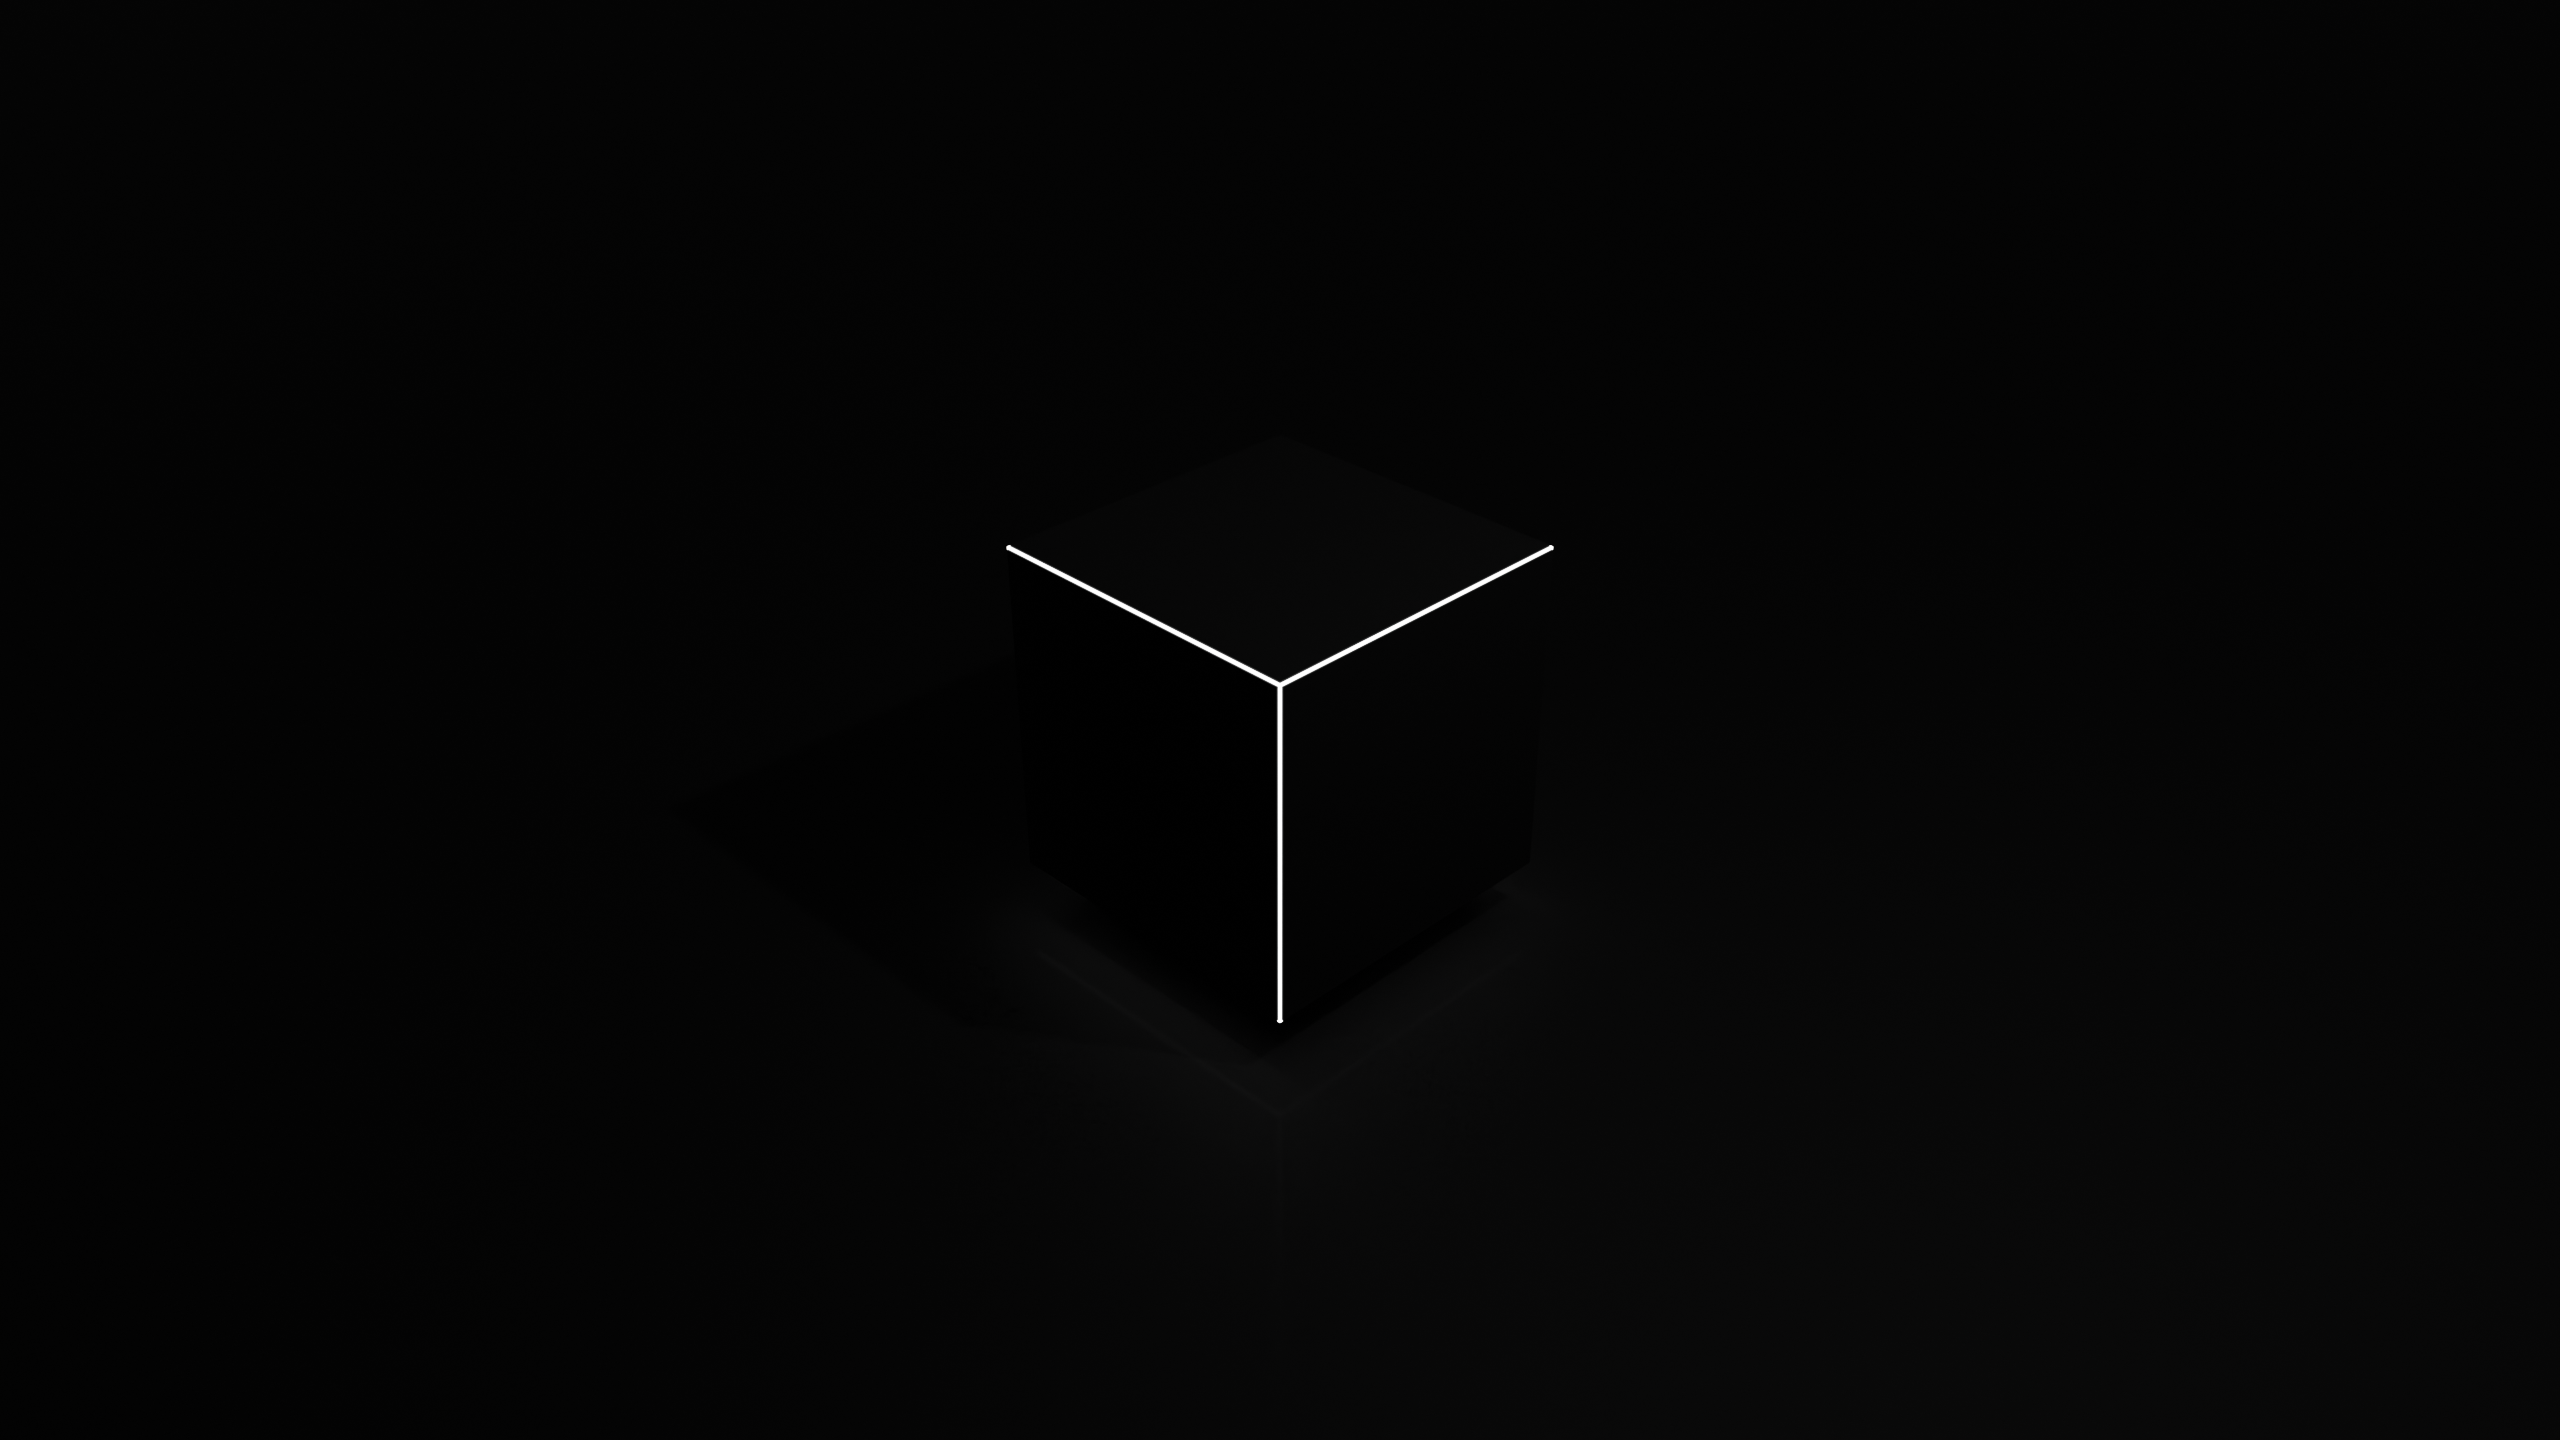 General 2560x1440 minimalism cube dark background